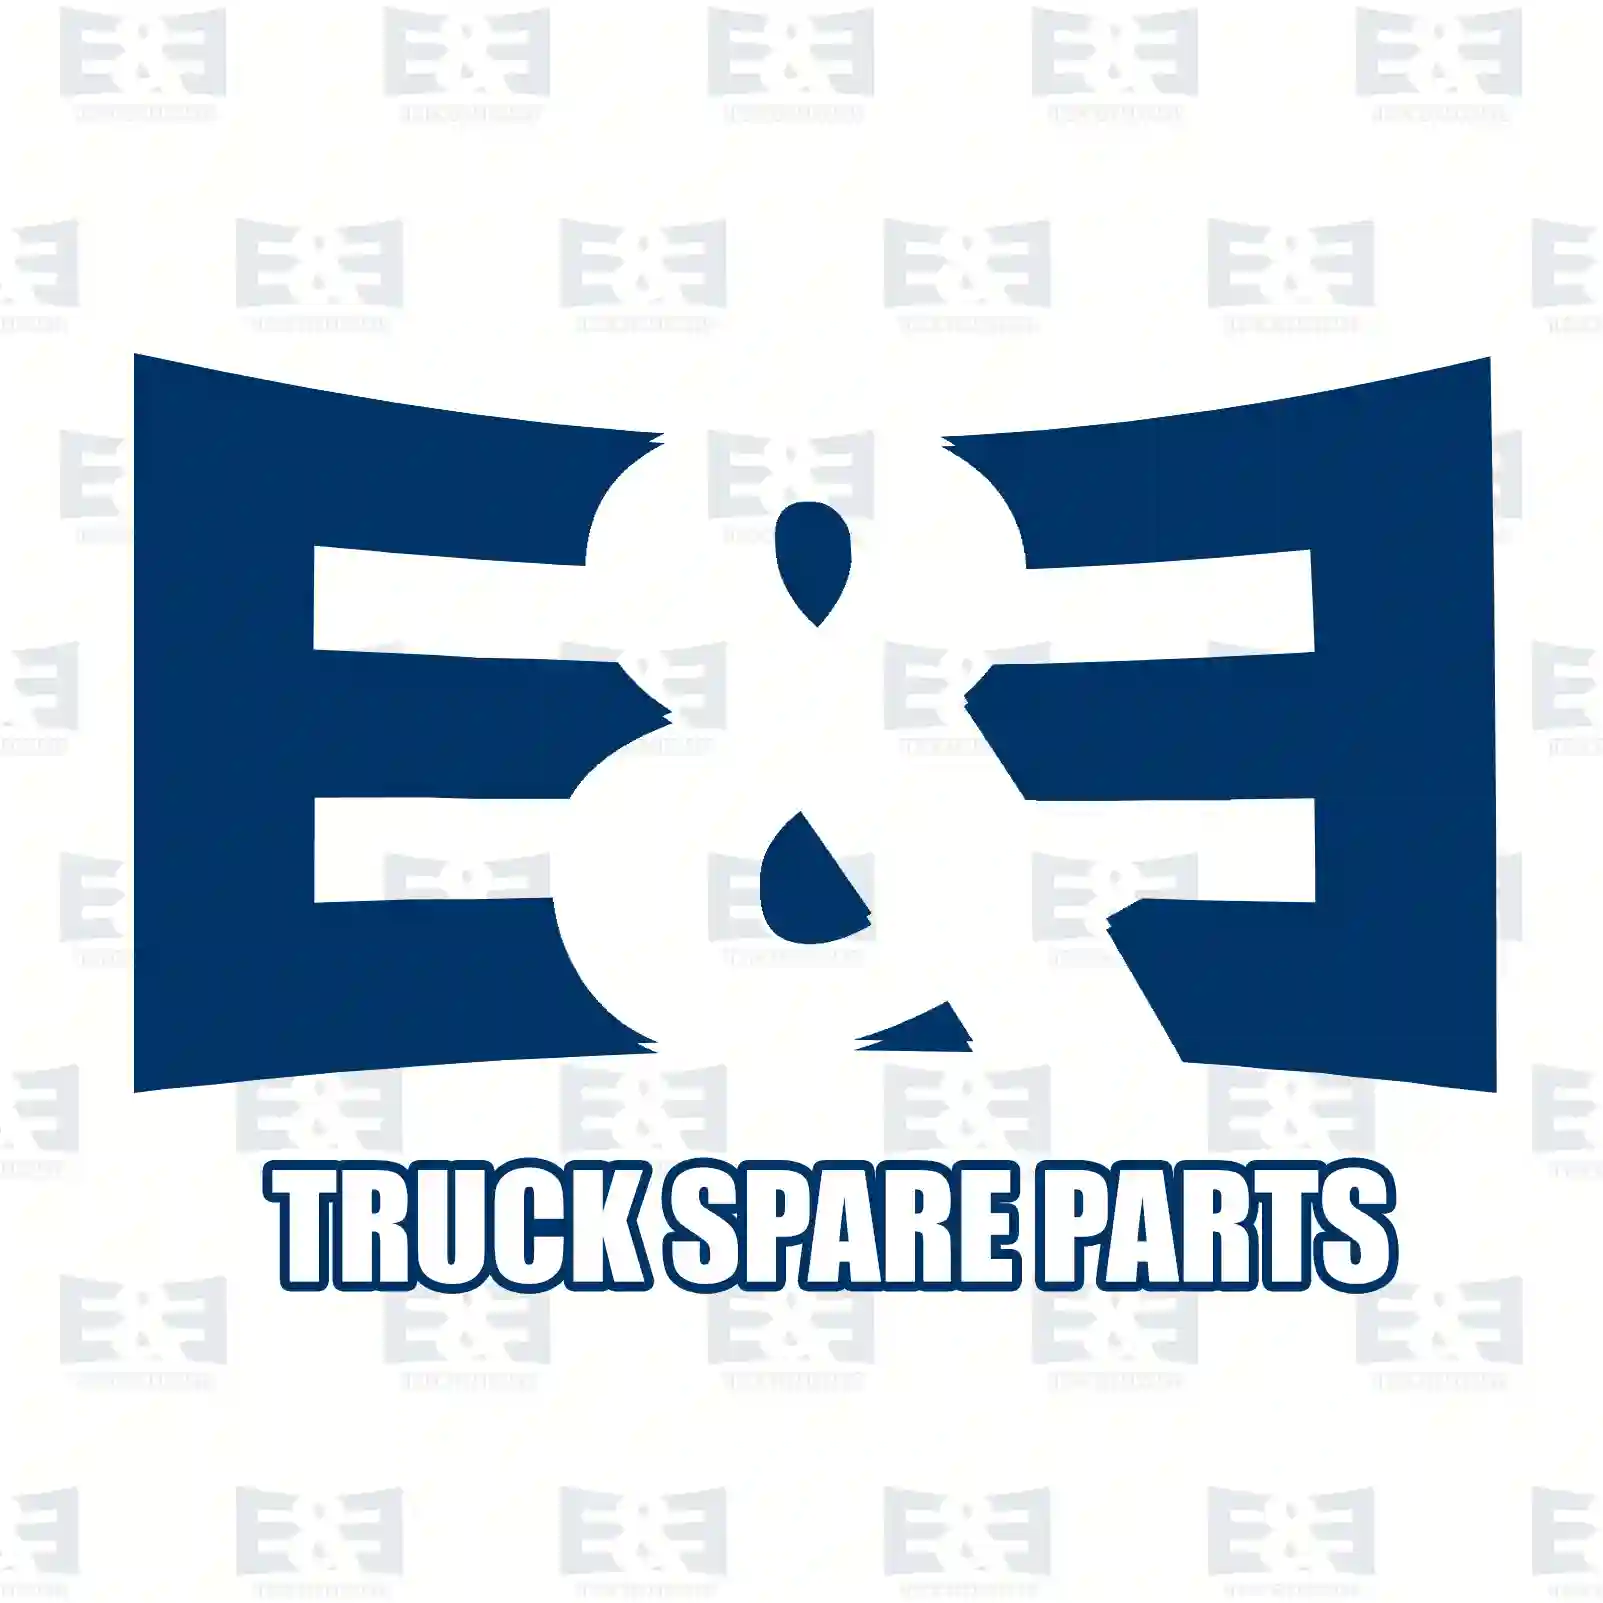 Propeller shaft, 2E2276881, 6564109802, 65641 ||  2E2276881 E&E Truck Spare Parts | Truck Spare Parts, Auotomotive Spare Parts Propeller shaft, 2E2276881, 6564109802, 65641 ||  2E2276881 E&E Truck Spare Parts | Truck Spare Parts, Auotomotive Spare Parts